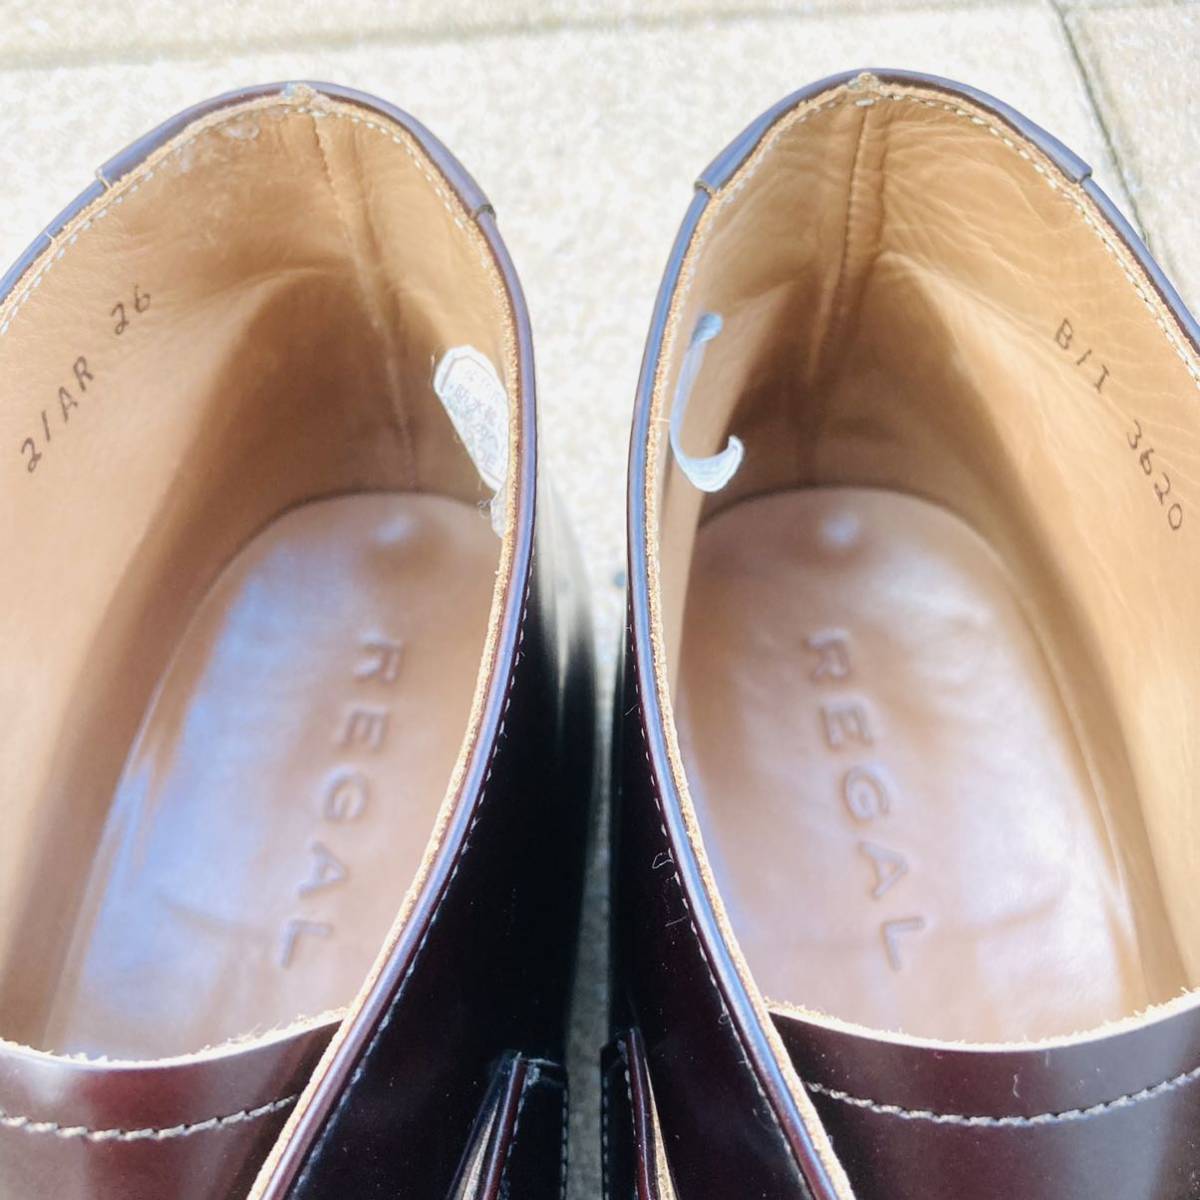 リーガル ㎝ 革靴 ビジネスシューズ チャッカブーツ ベルト シングルモンク ダークブラウン 茶色 BR 日本製   本革